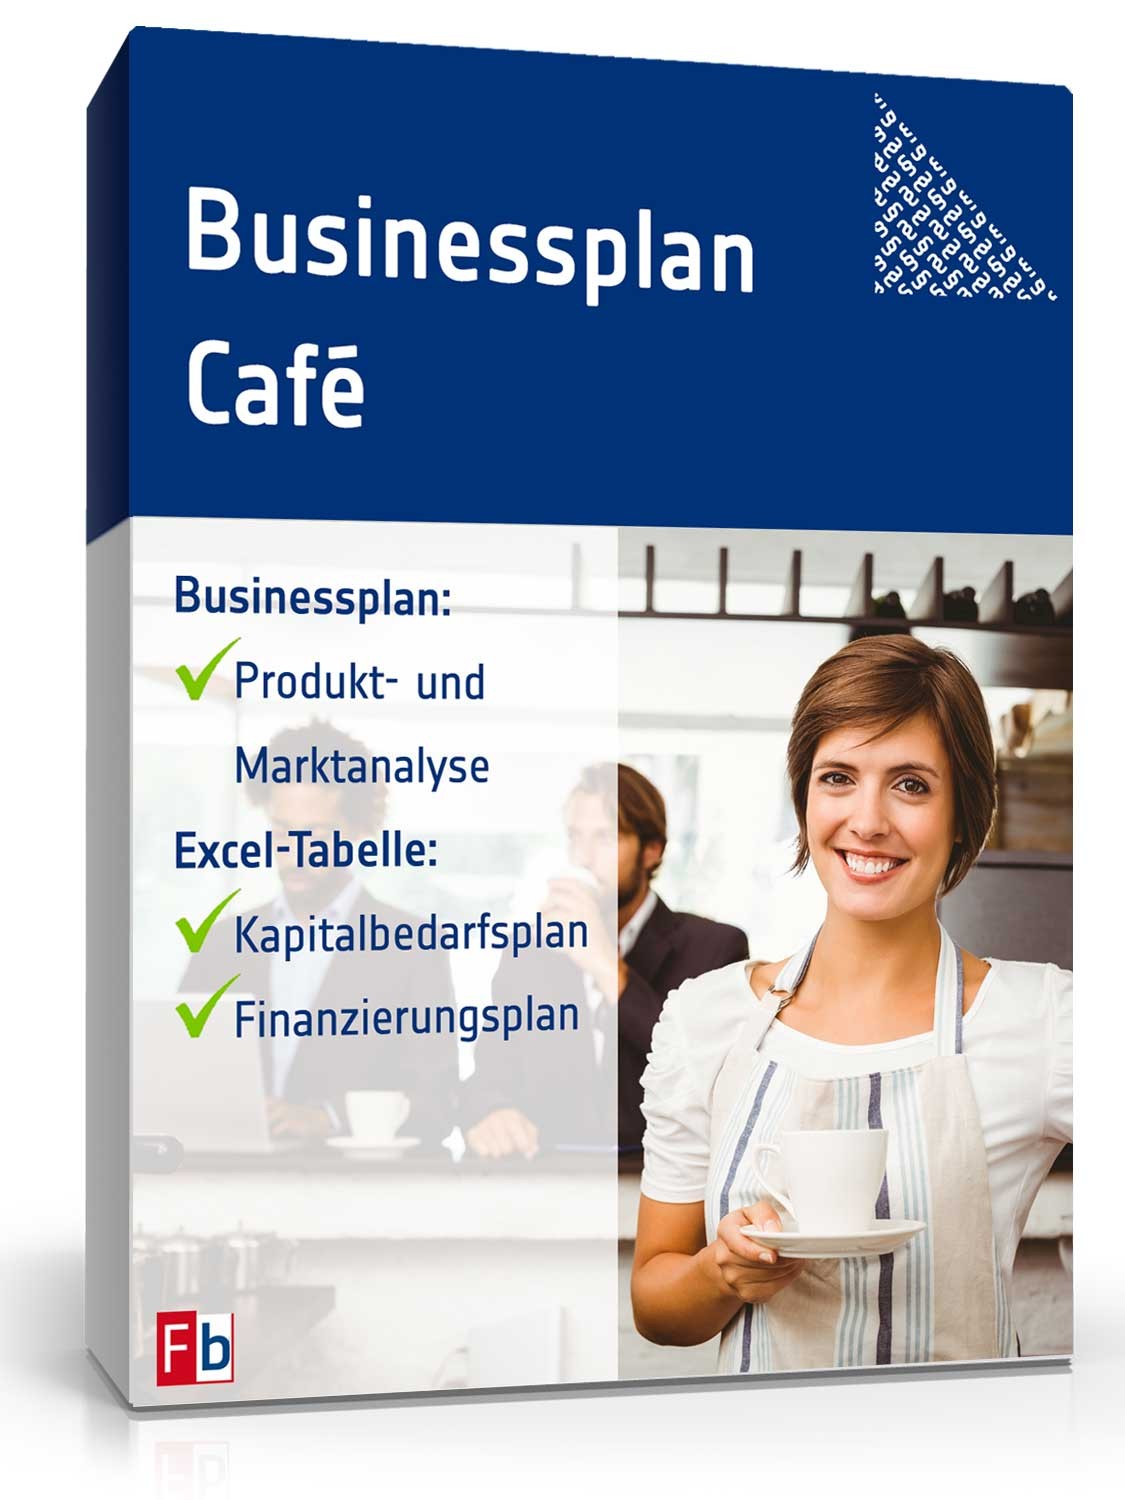 Hauptbild des Produkts: Businessplan Café